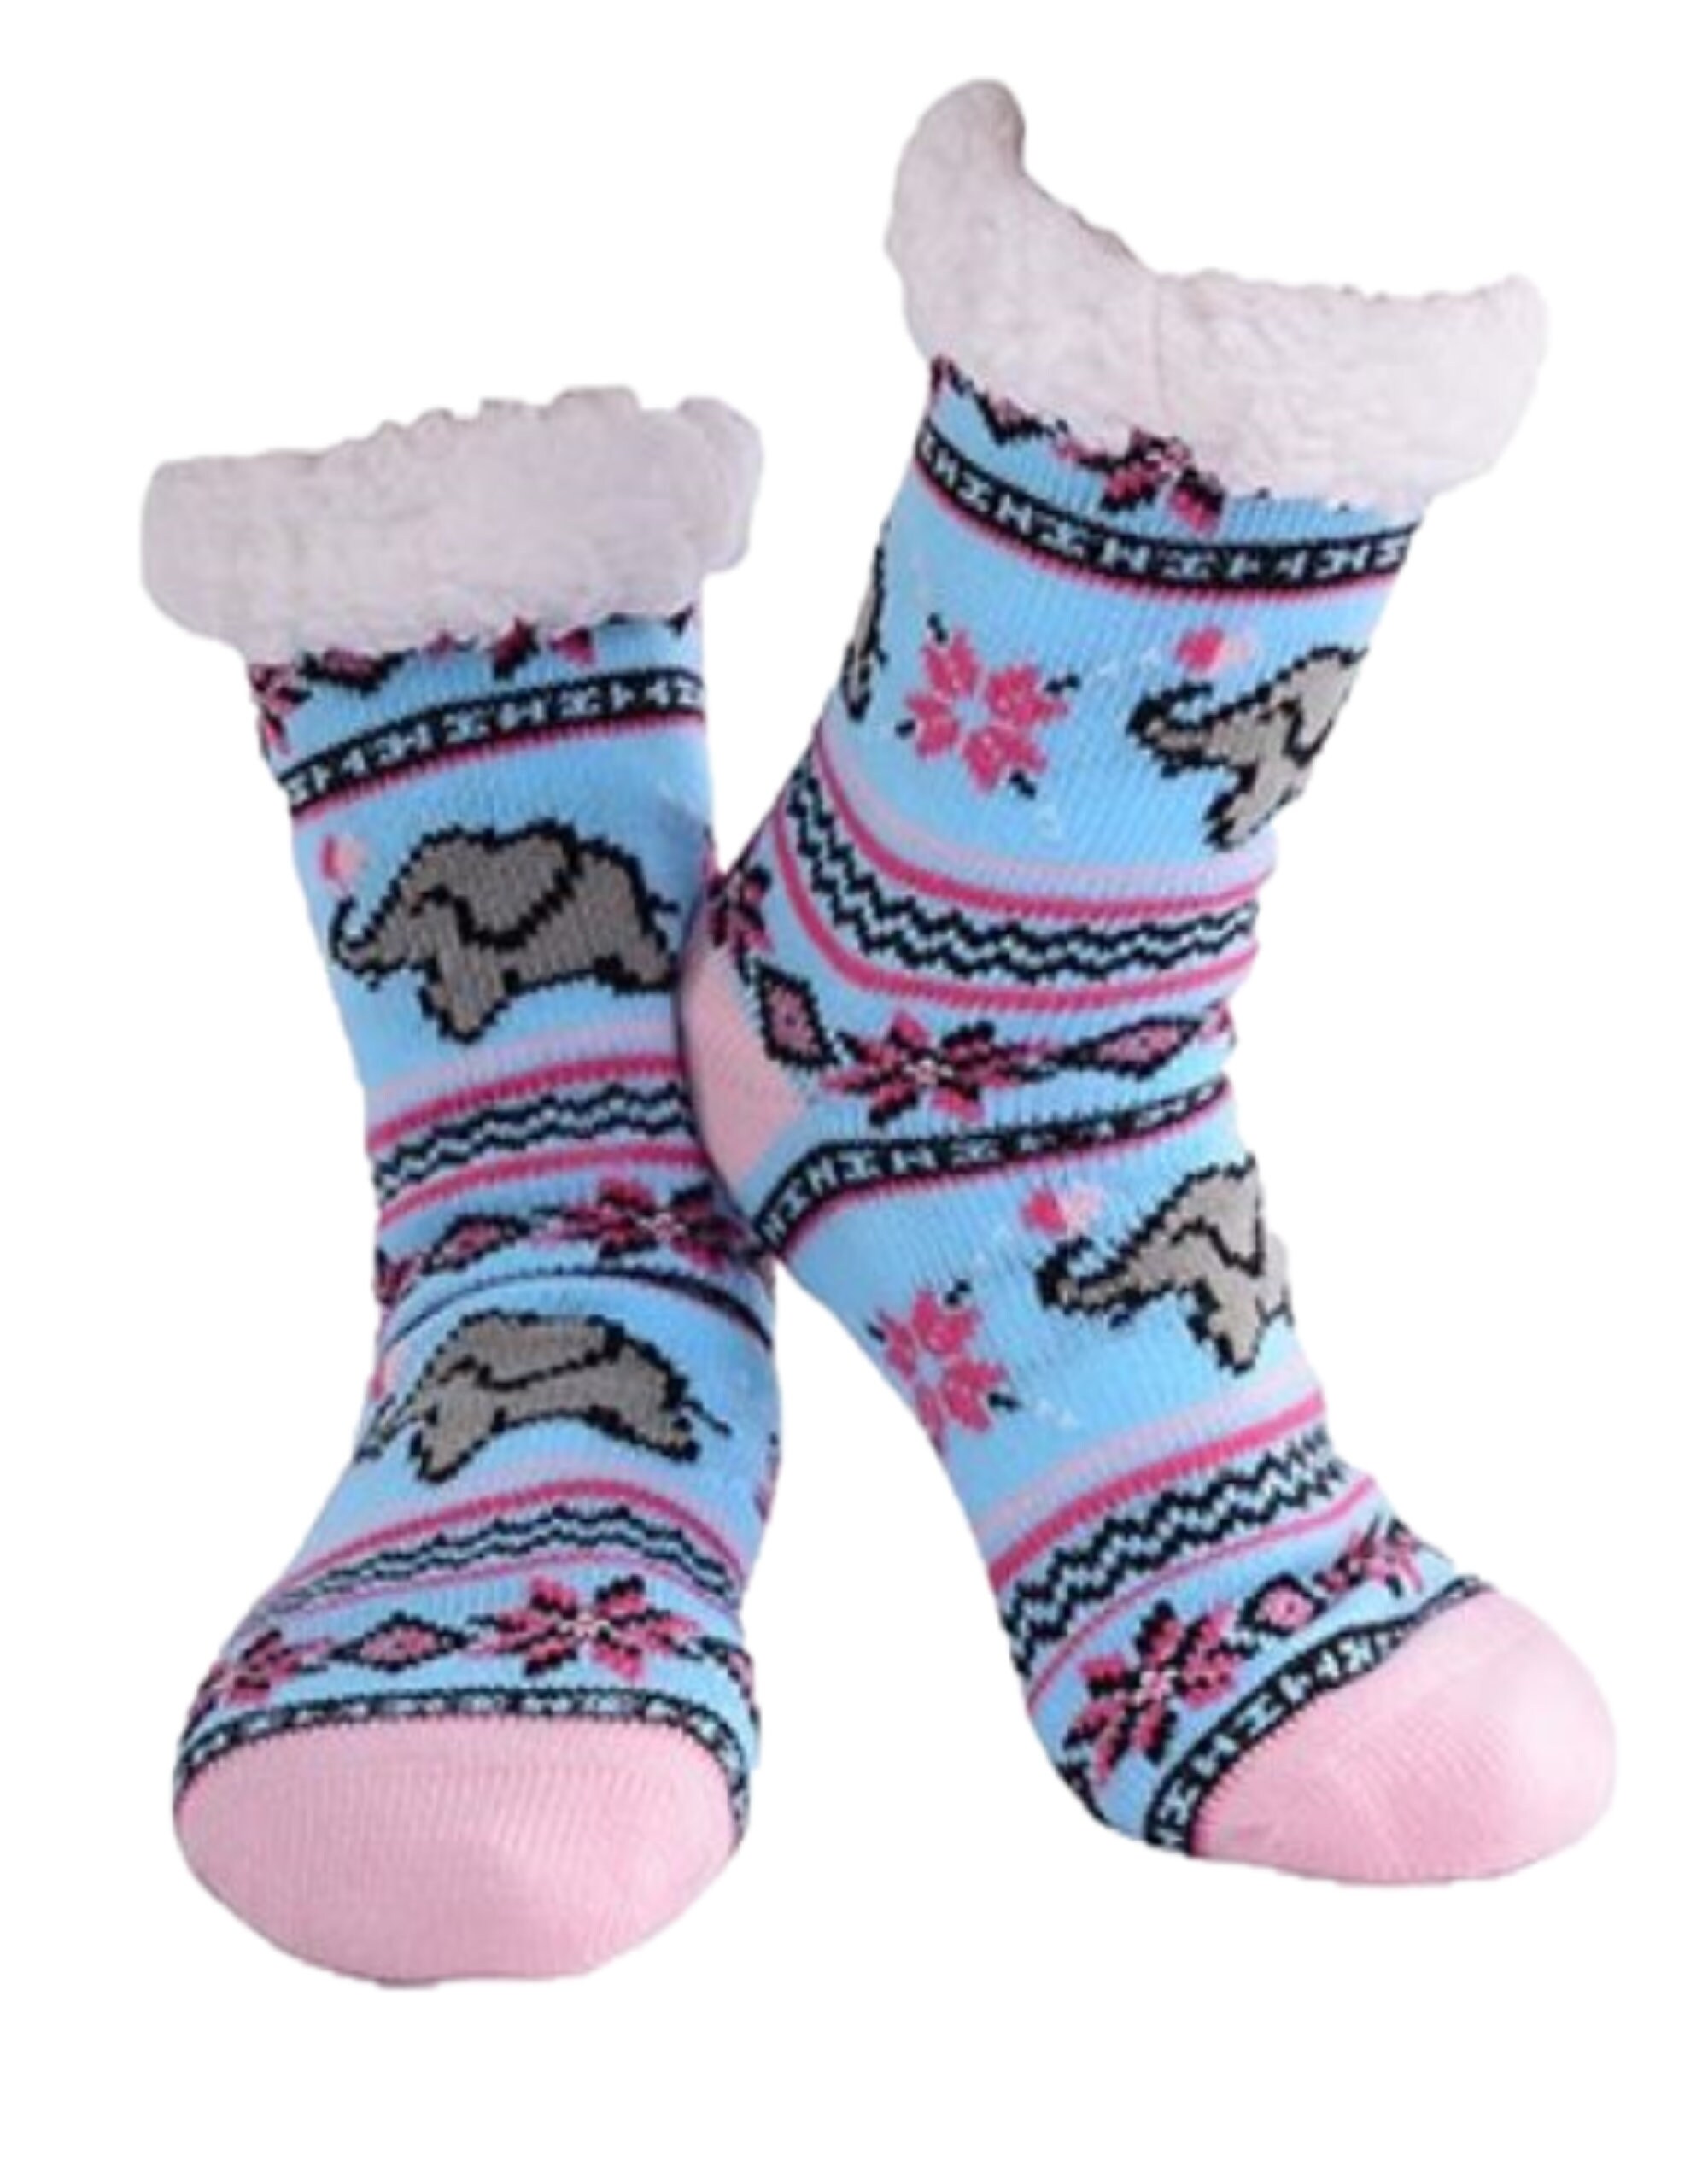 Slipper Socks for women slipper socks for girls 11 plus | Etsy